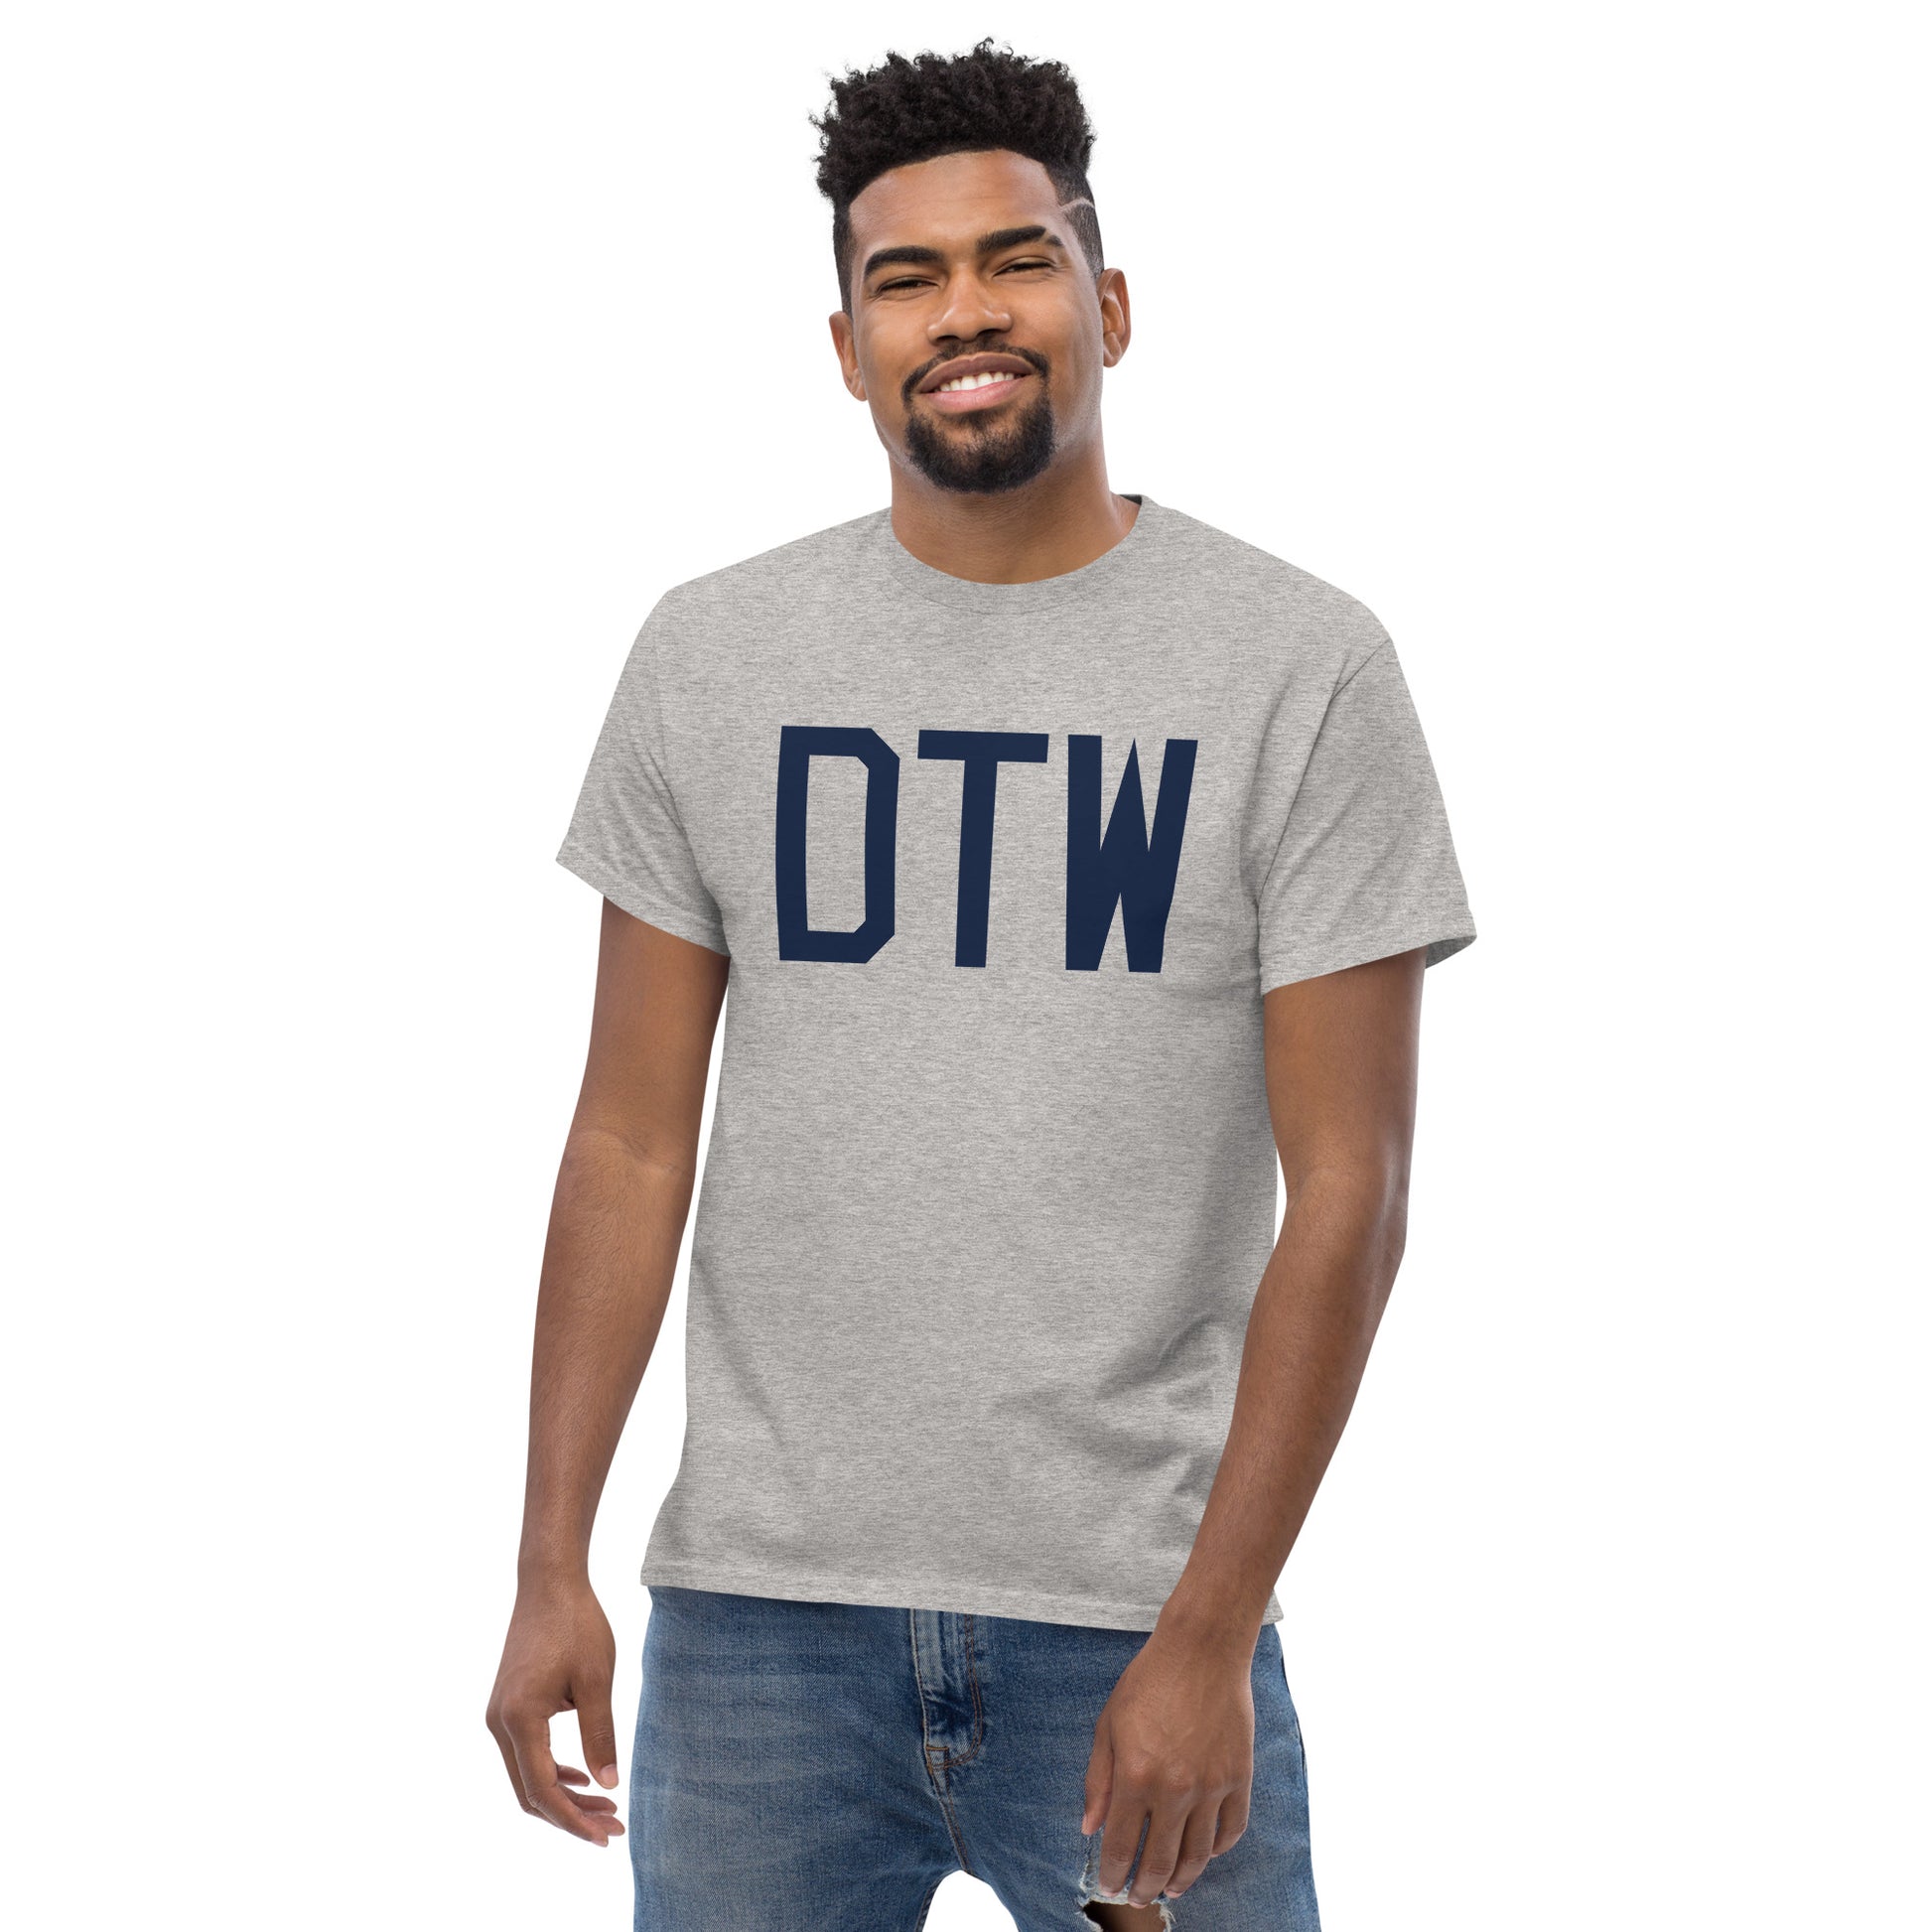 Aviation-Theme Men's T-Shirt - Navy Blue Graphic • DTW Detroit • YHM Designs - Image 06